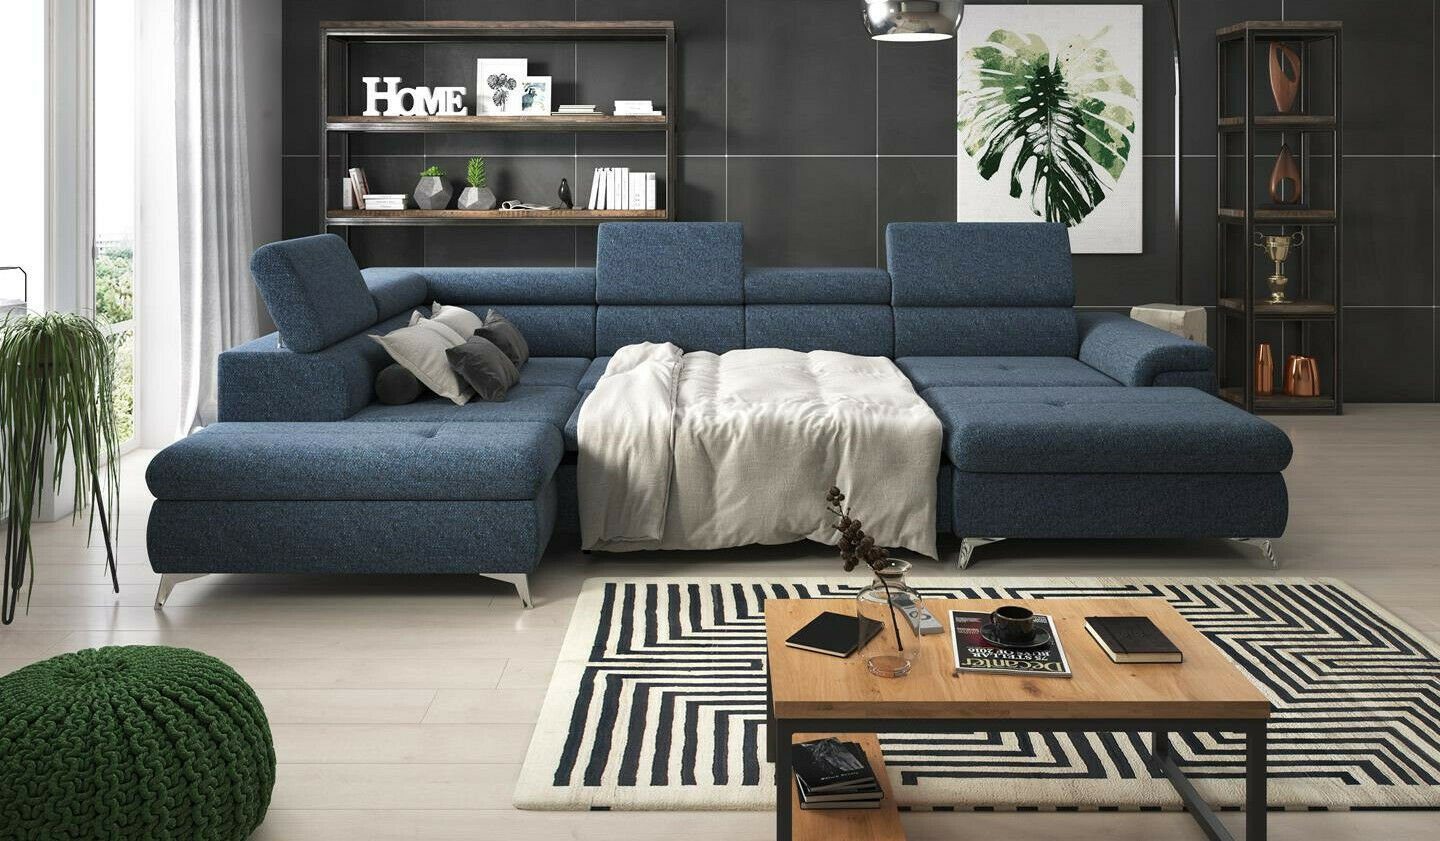 JVmoebel Ecksofa, Ecksofa Sofa Couch Polster Bettfunktion Couch U Form  Couchen Möbel Sofas Neu online kaufen | OTTO